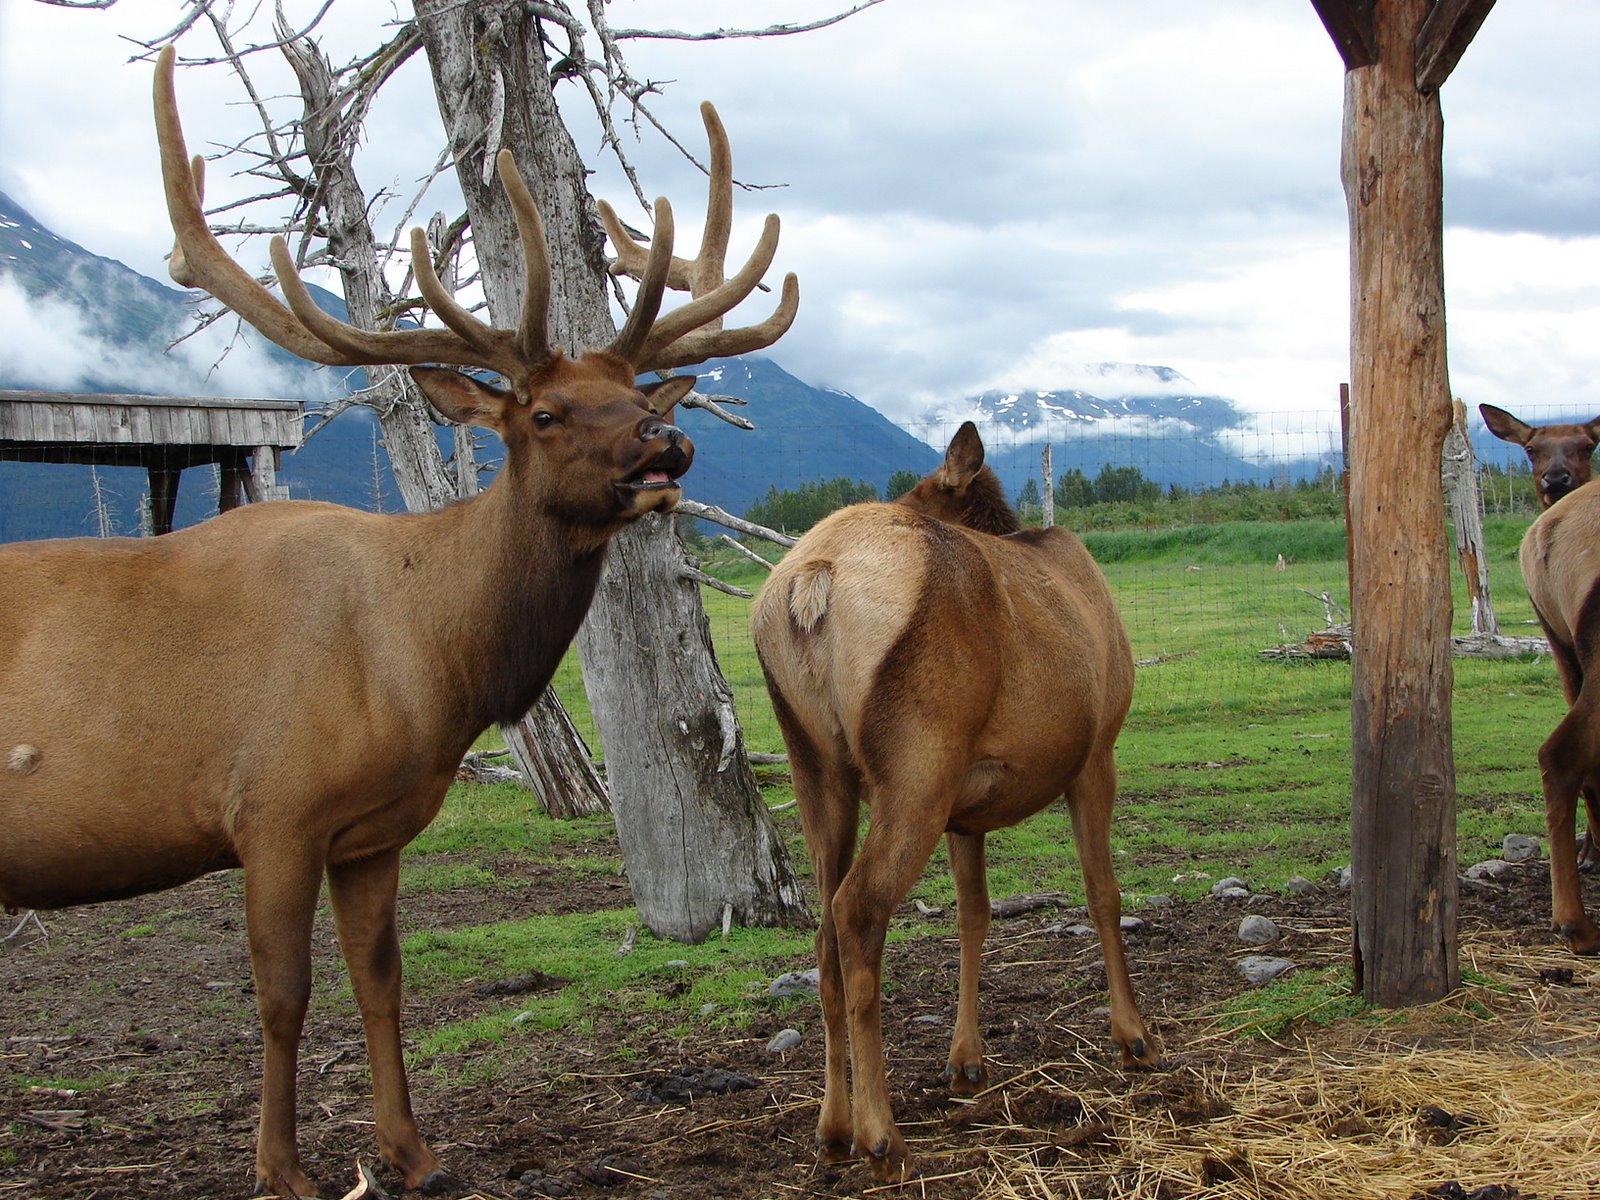 [elk+at+wildlife+park.jpg]